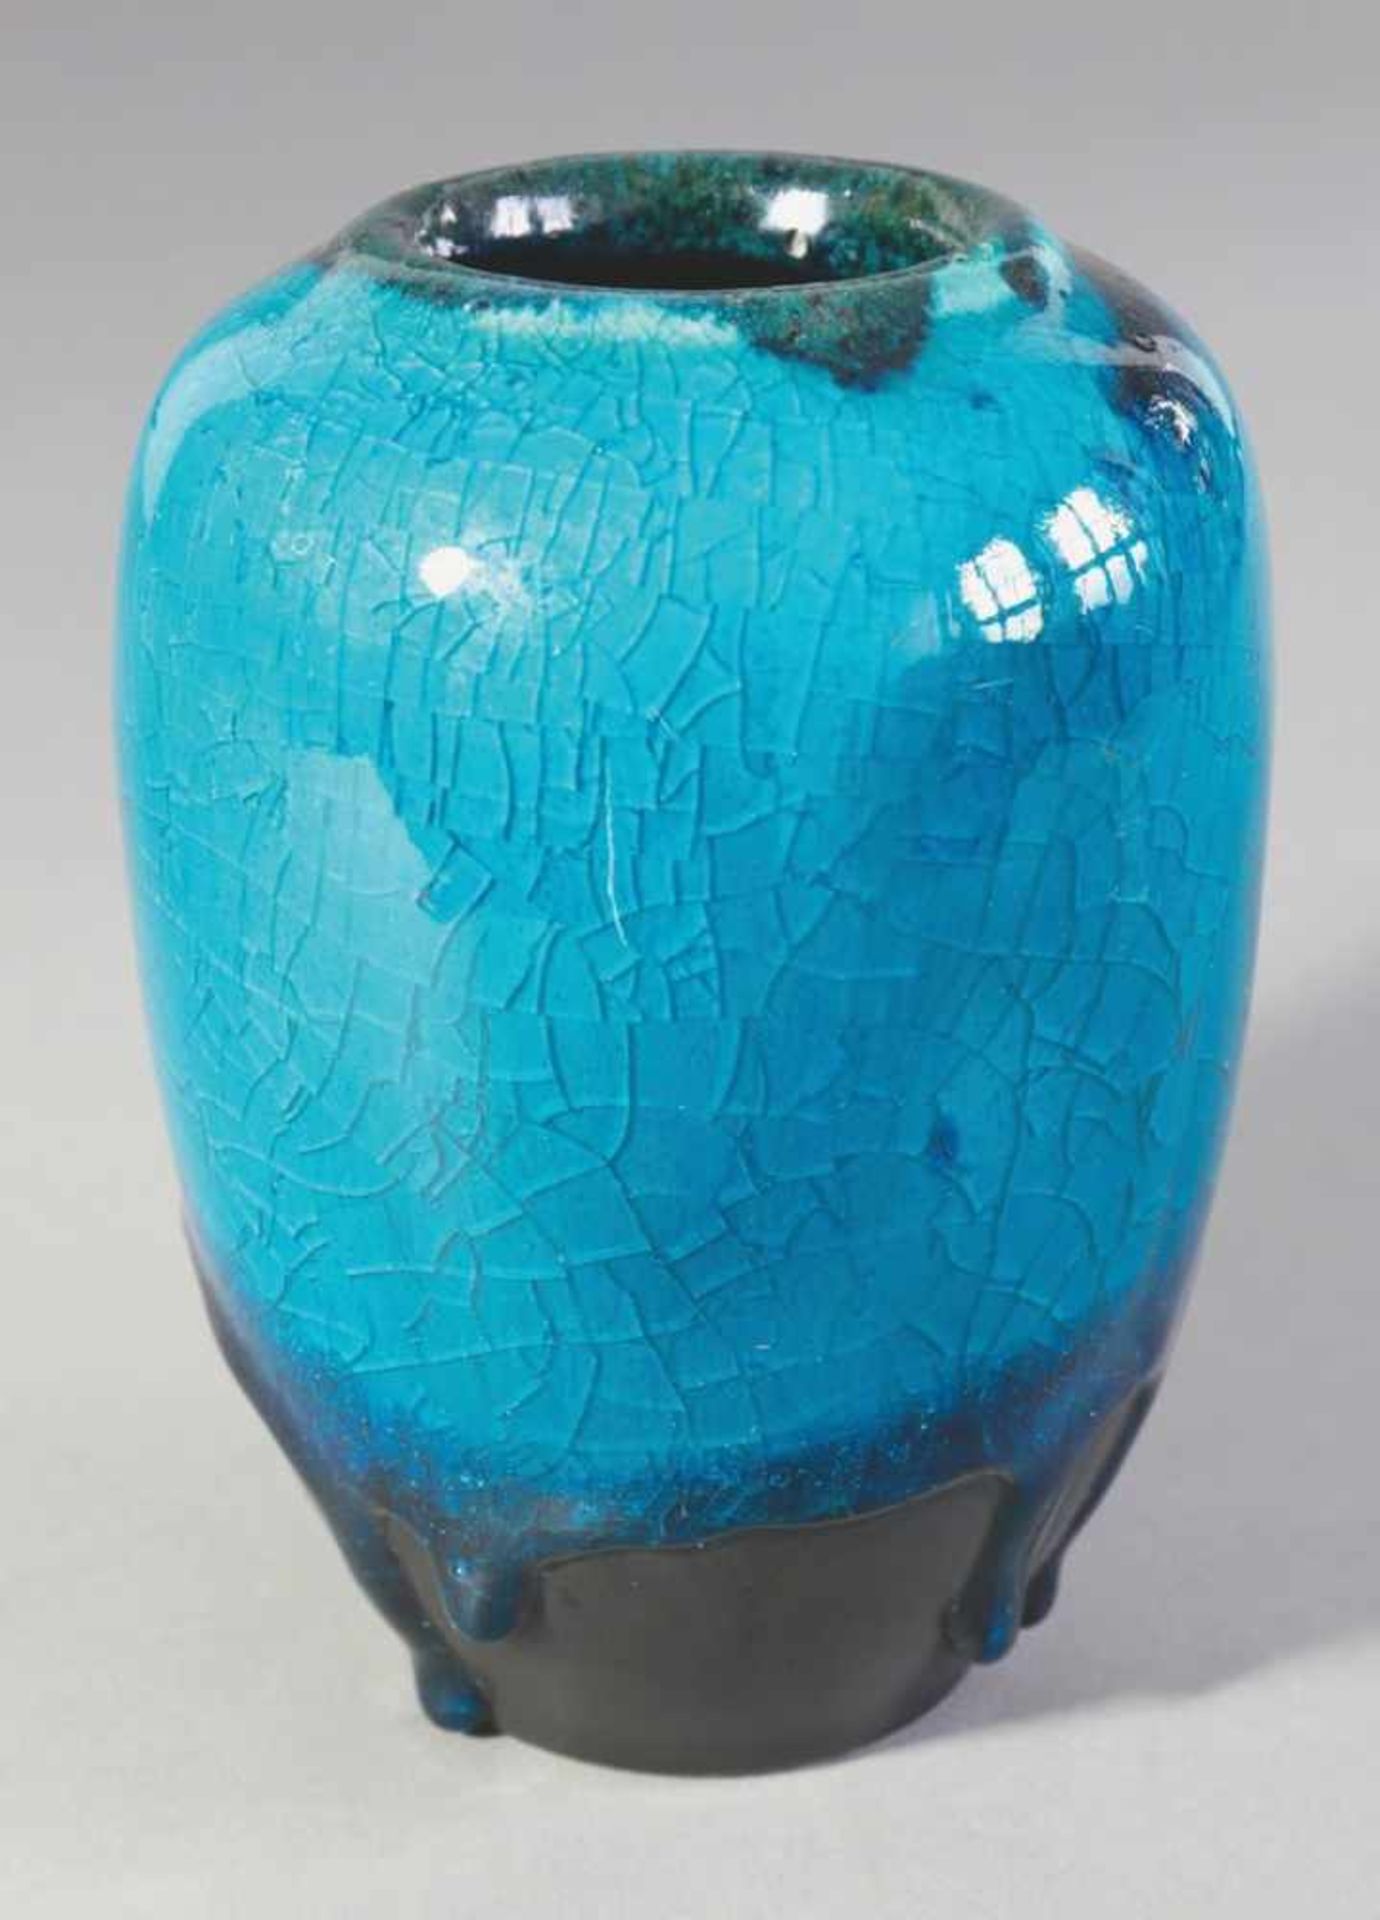 Jan Bontjes van BeekDr. Alfred Ungewiß1950-67Vase. 1950-67. Keramik. Türkisblaue Überlaufglasur